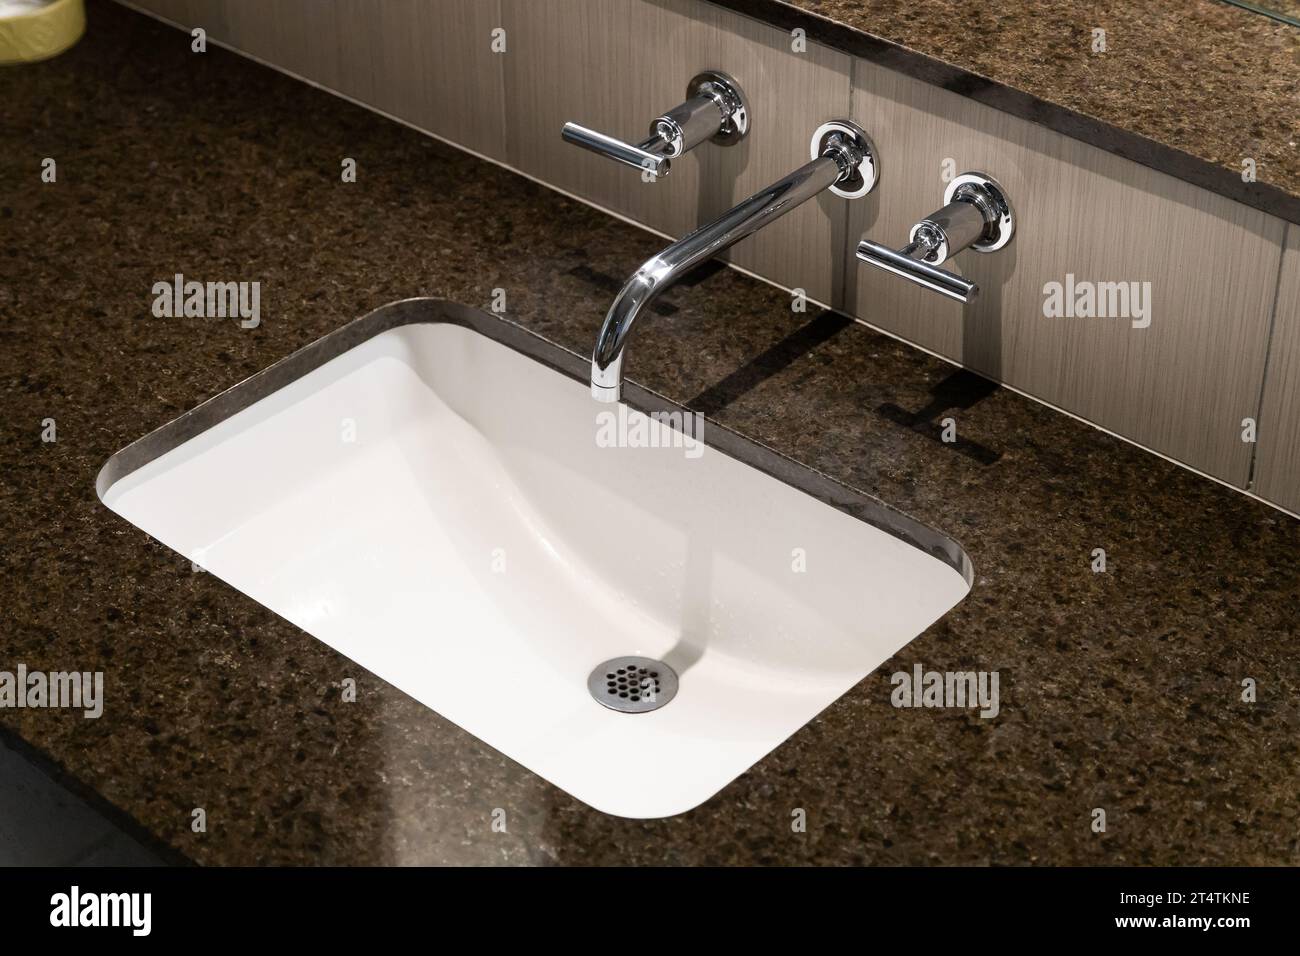 Un détail d'un lavabo de salle de bain d'en haut avec un robinet chromé poli, évier blanc, et un comptoir de granit brun. Banque D'Images